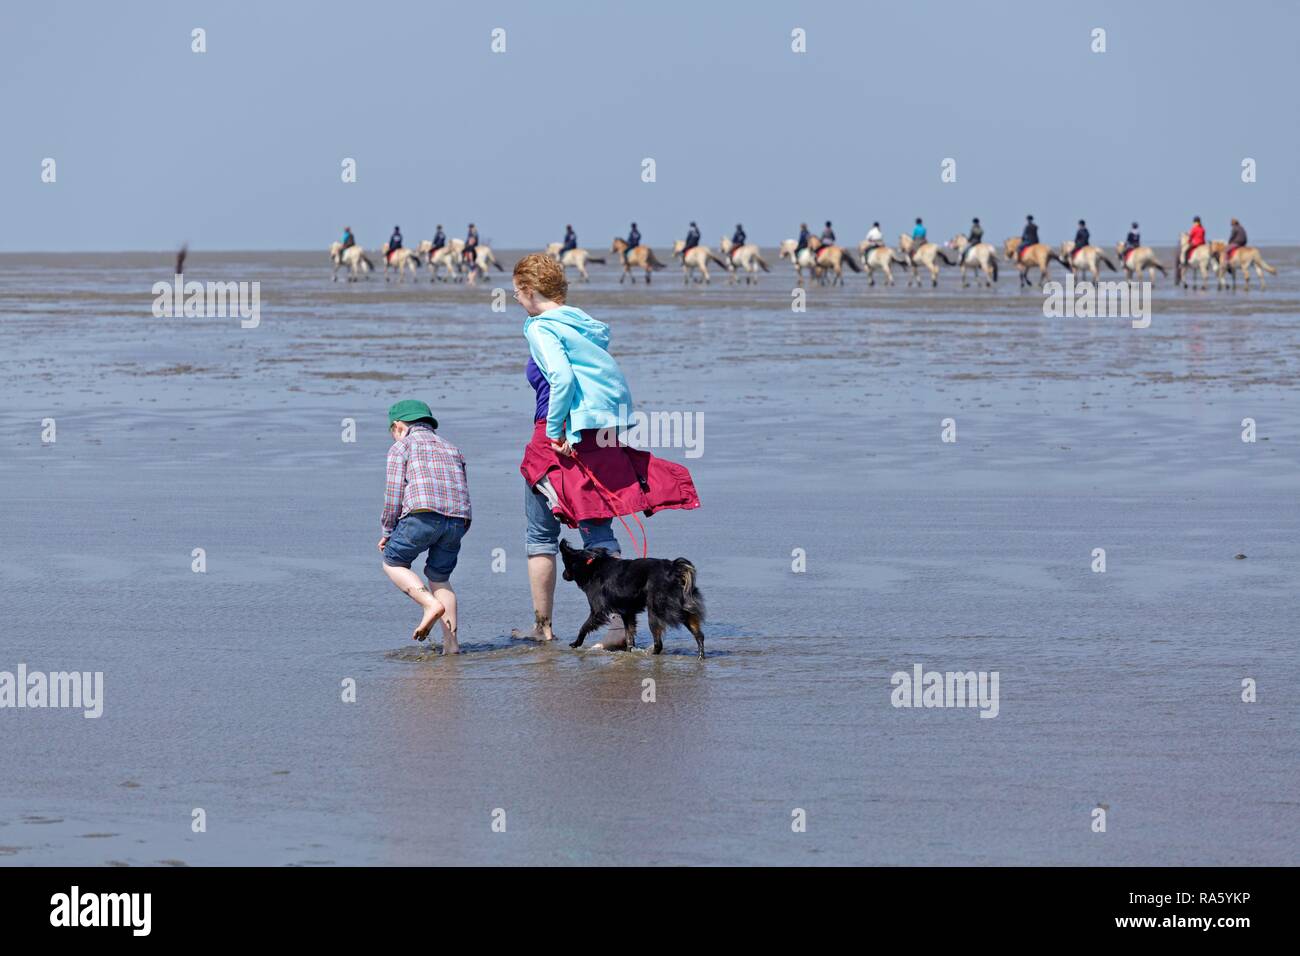 Femme, enfant et un chien de marcher dans les vasières avec une rangée d'horseriders à l'arrière, Duhnen, Cuxhaven, Basse-Saxe Banque D'Images